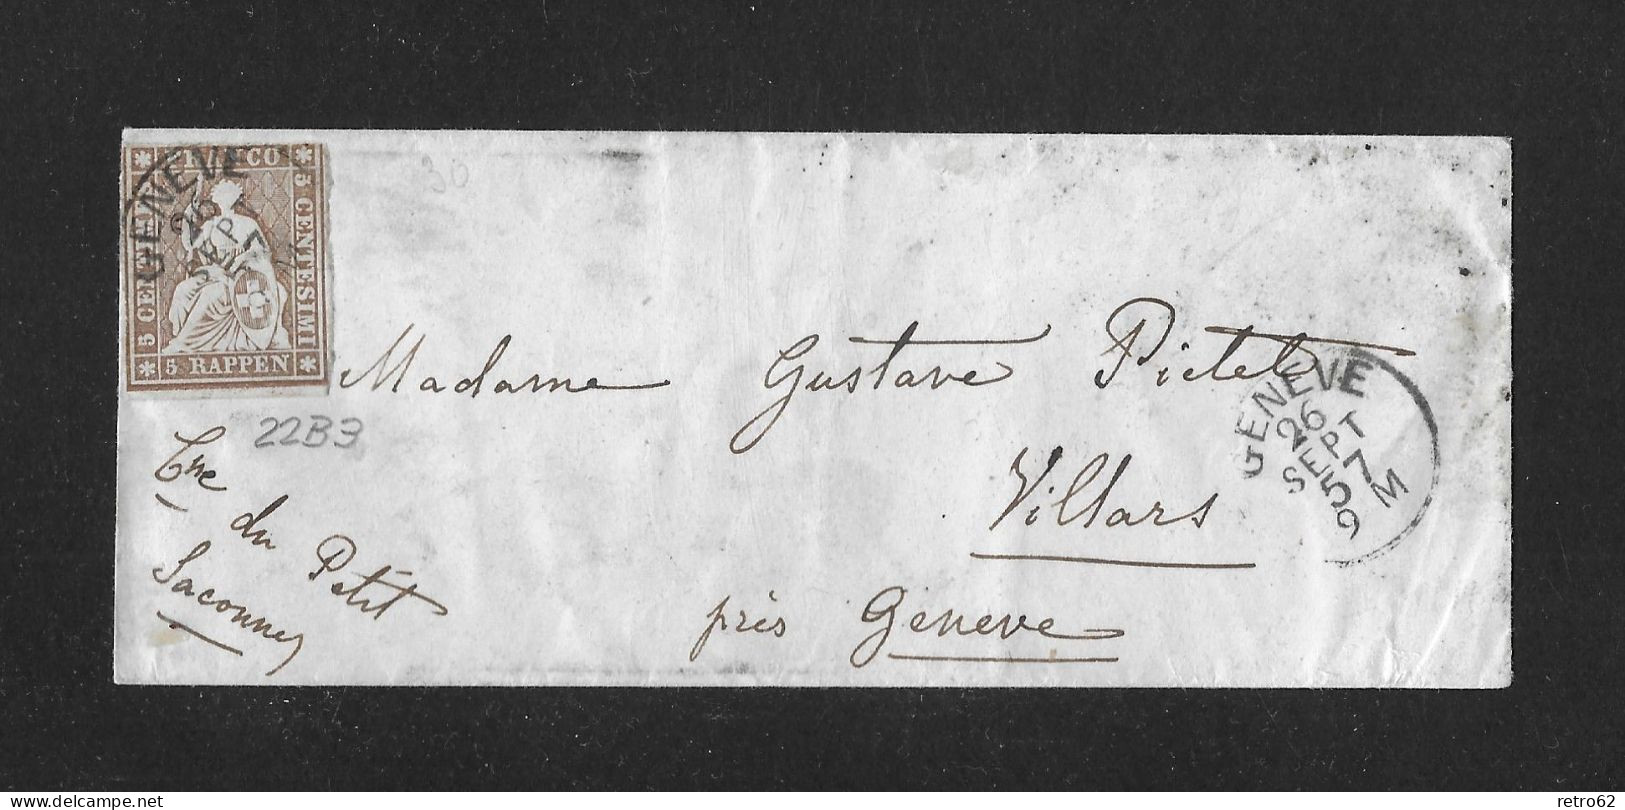 1857 HEIMAT GENÈVE ► Briefumschlag Von Genève Nach Villars    ►SBK-22B3 Grnève 26 SEPT 57 Guter Schnitt◄ - Cartas & Documentos